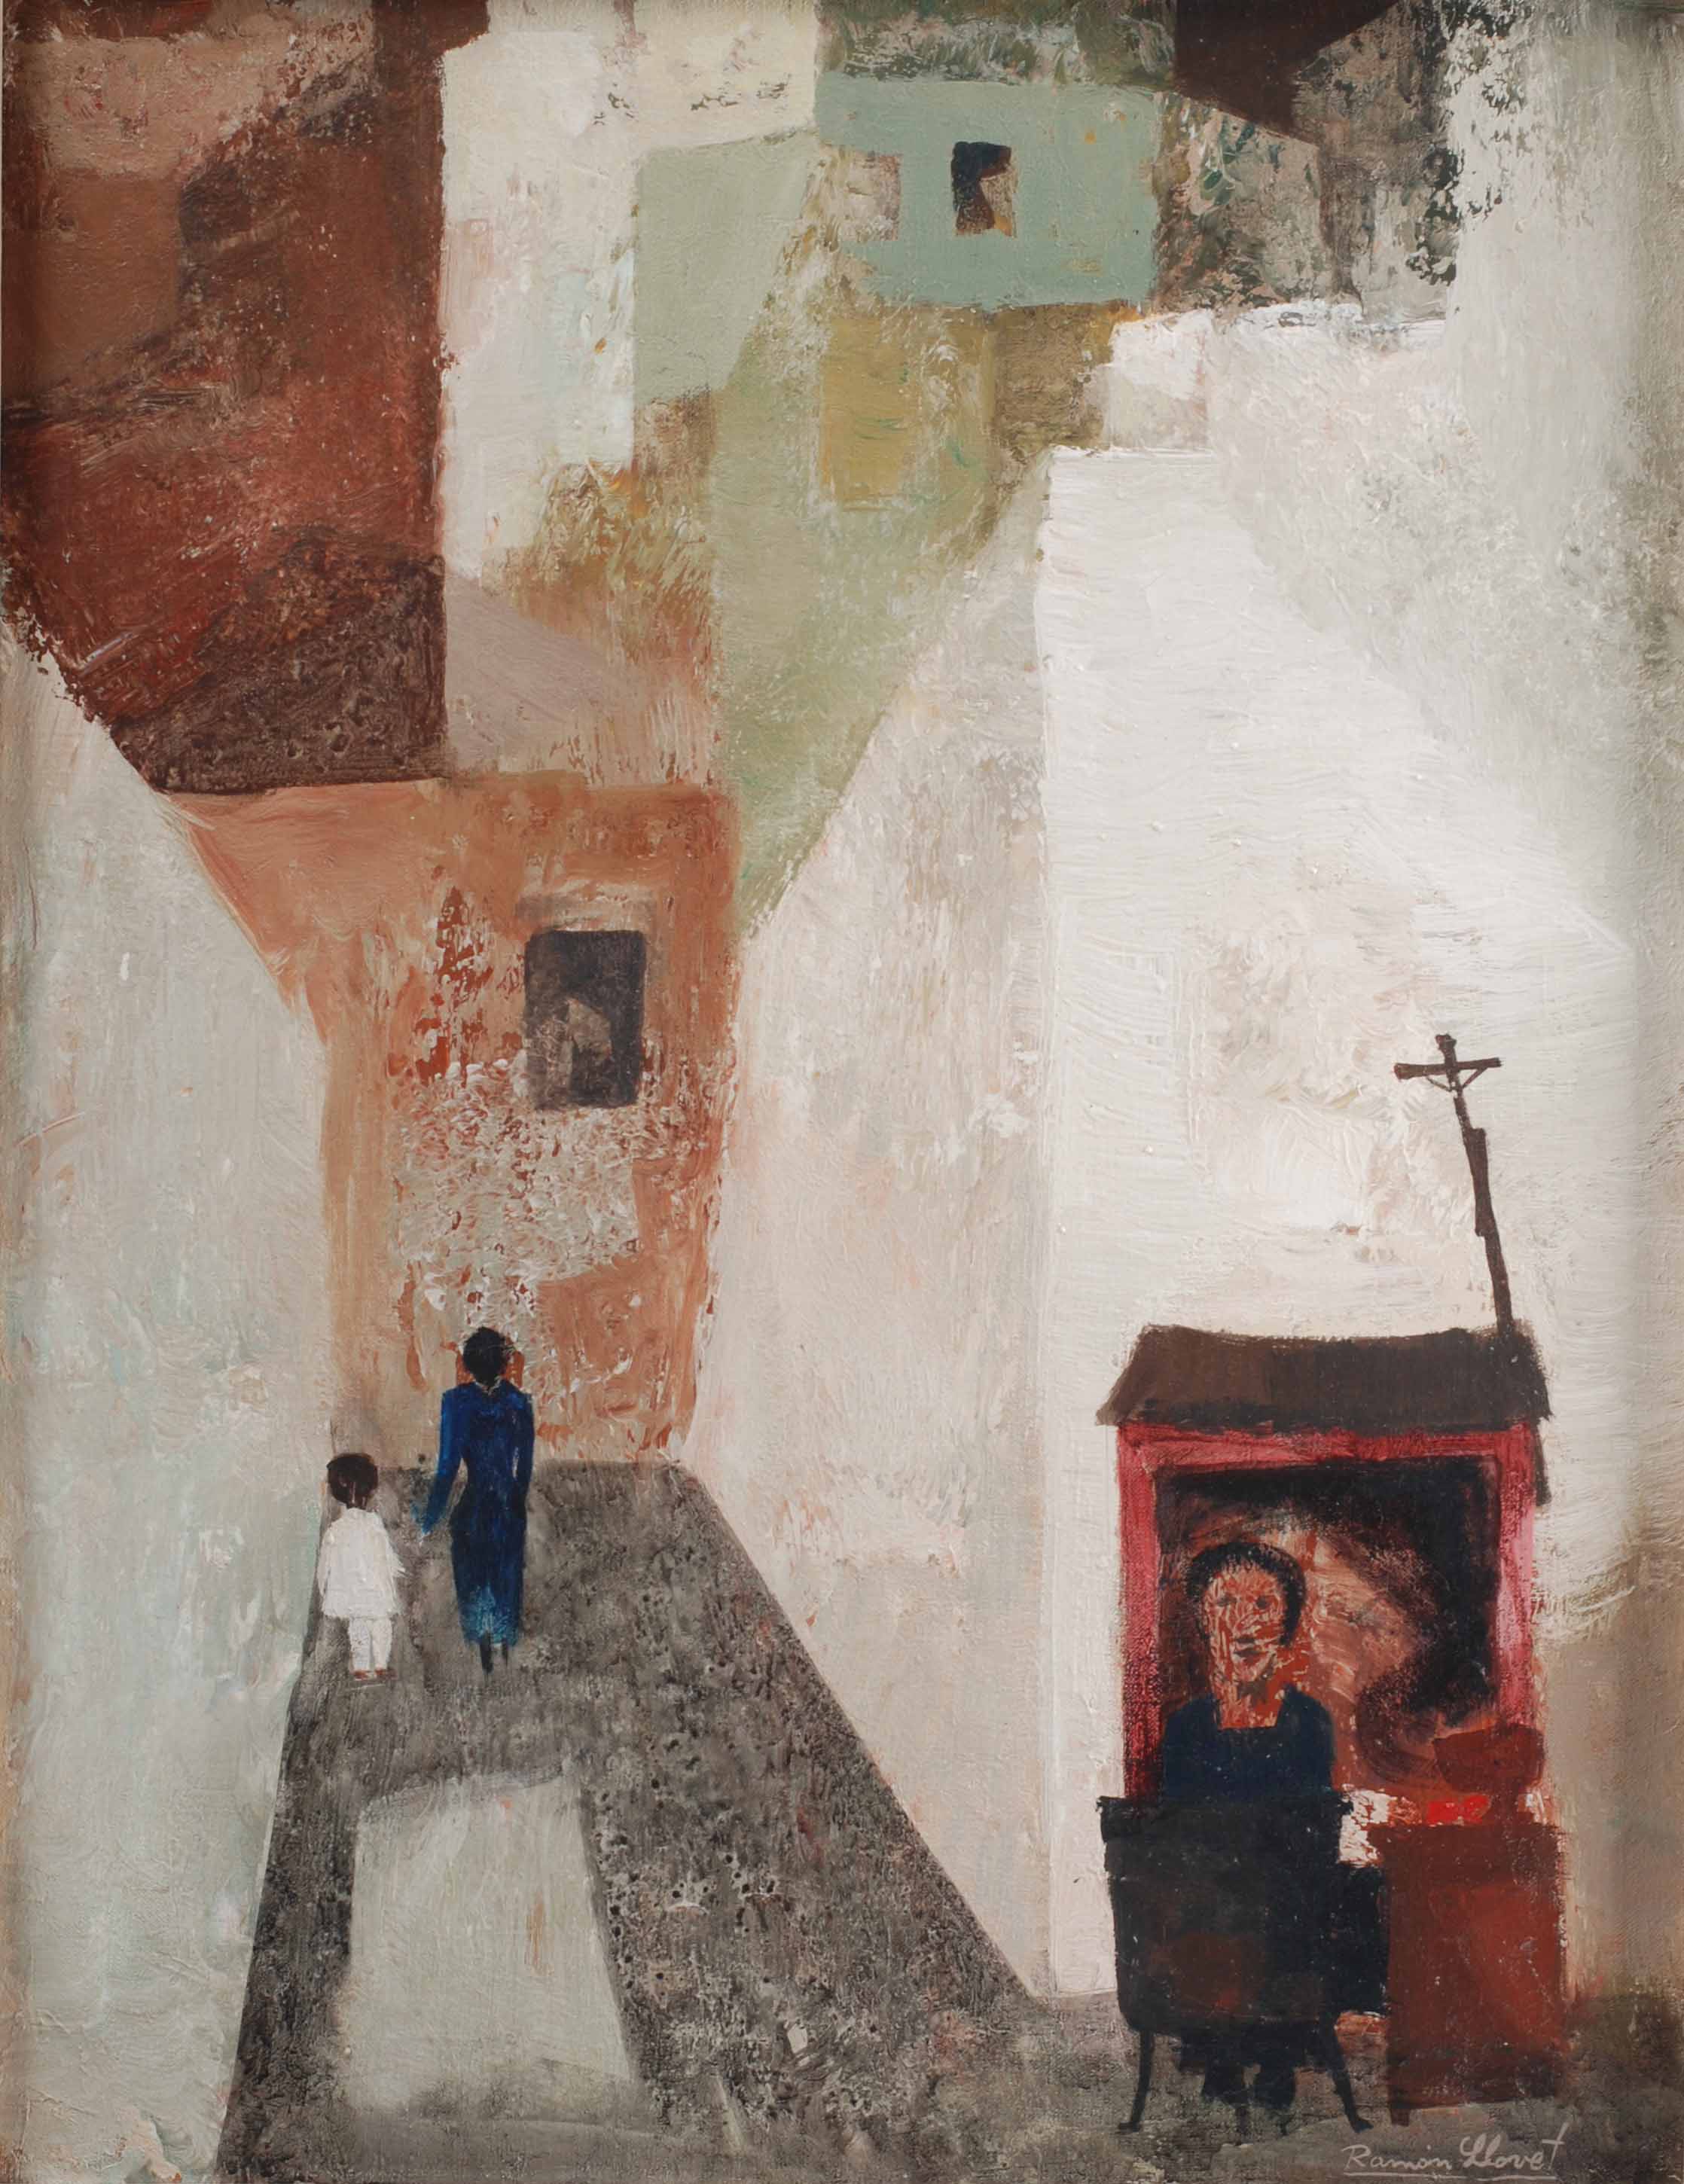 RAMÓN LLOVET (1917-1987). "CALLE CON CASTAÑERA", 1963.